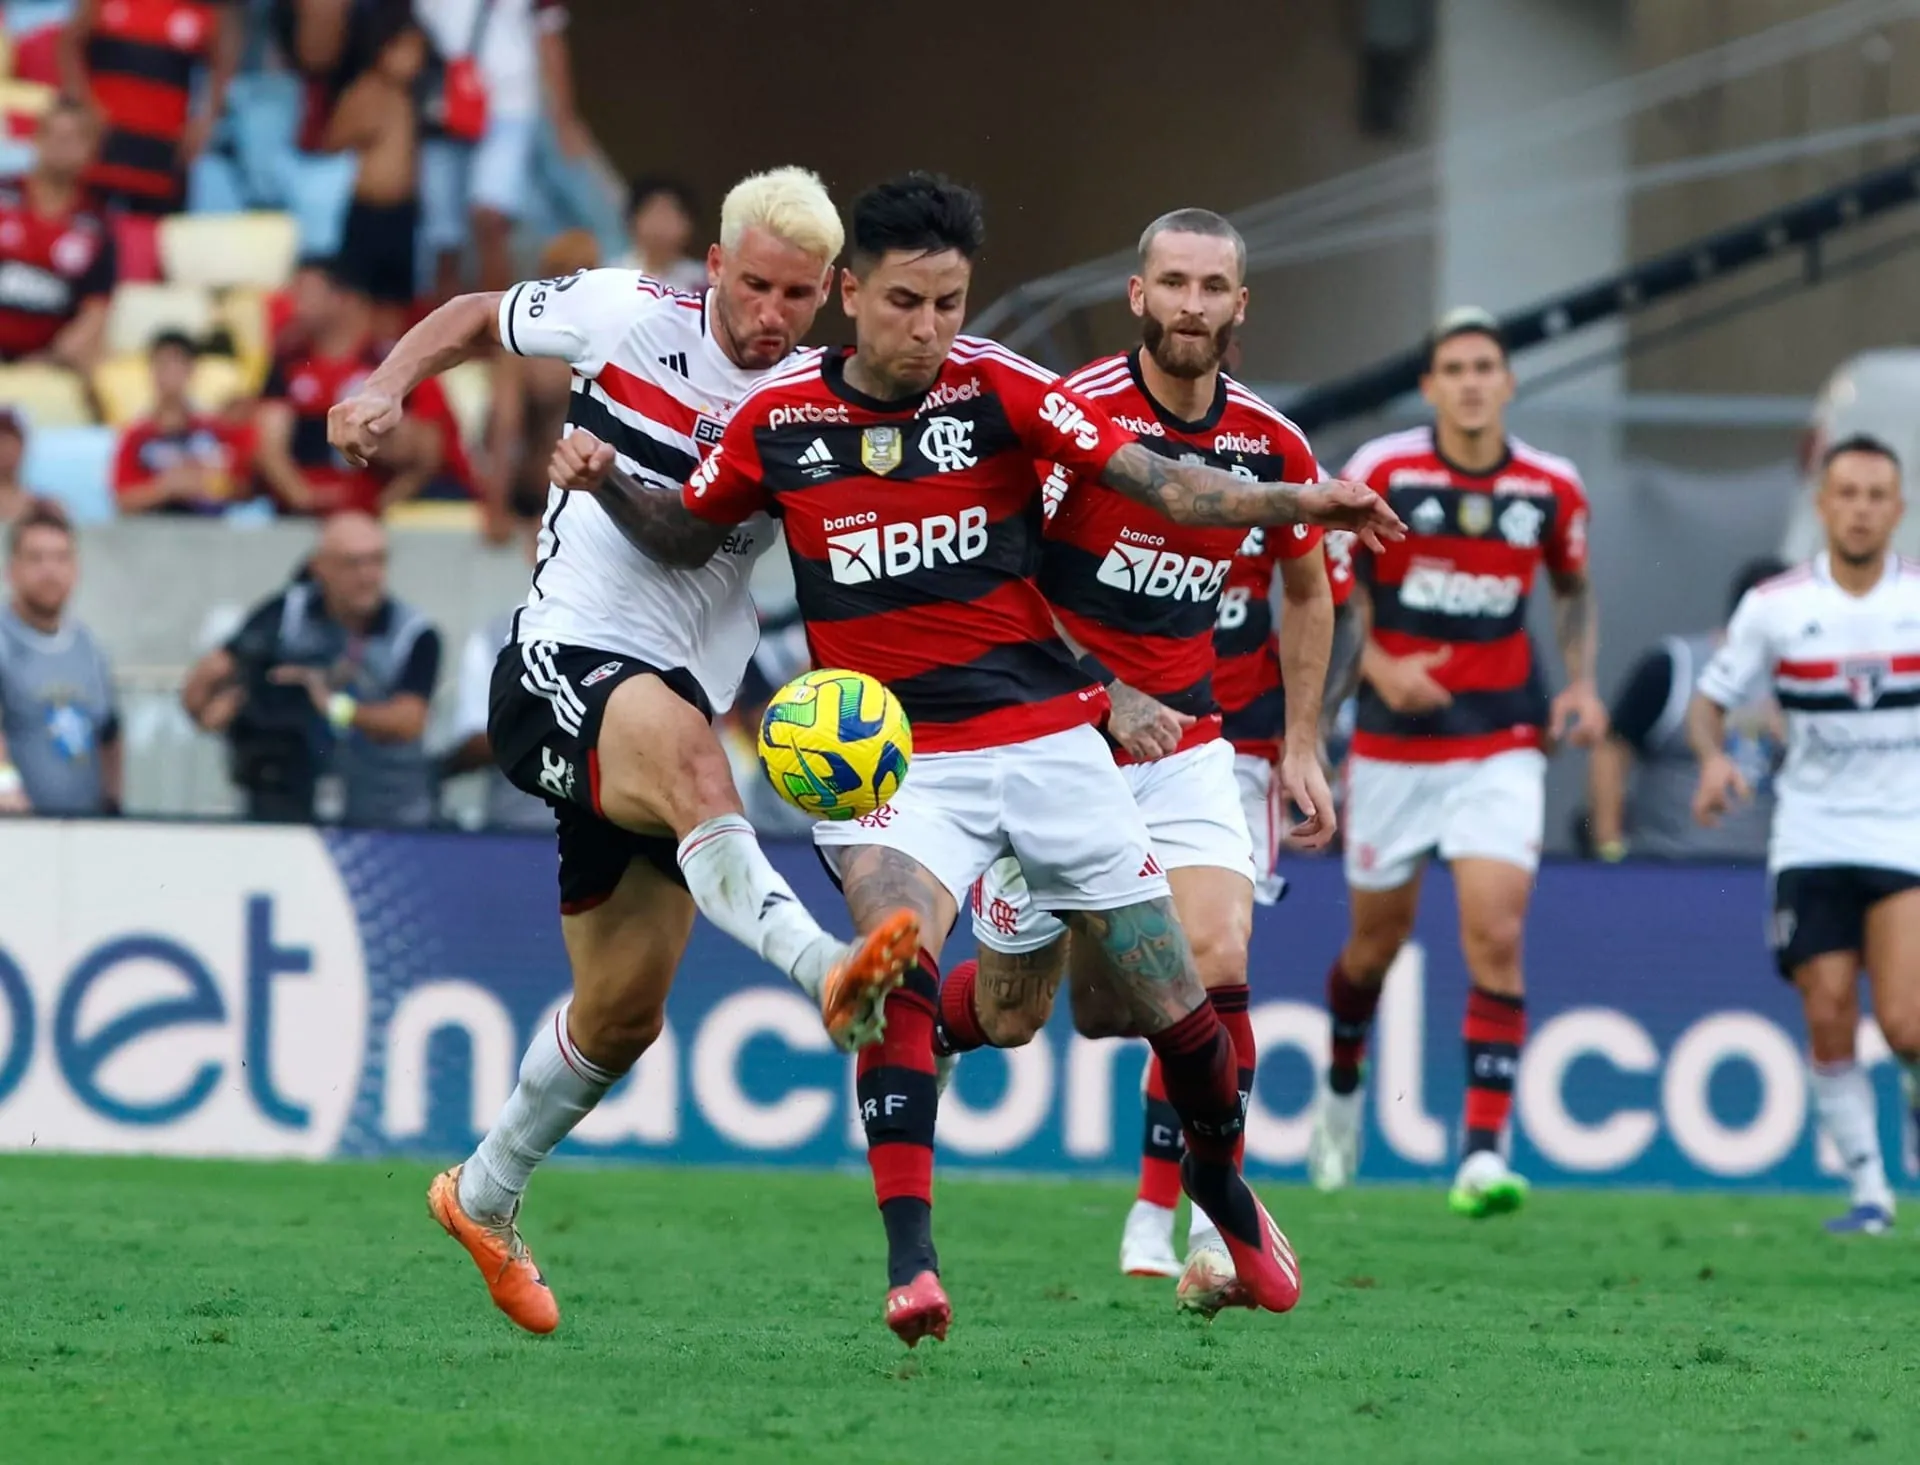 Confira o retrospecto do Flamengo como visitante nas finais da